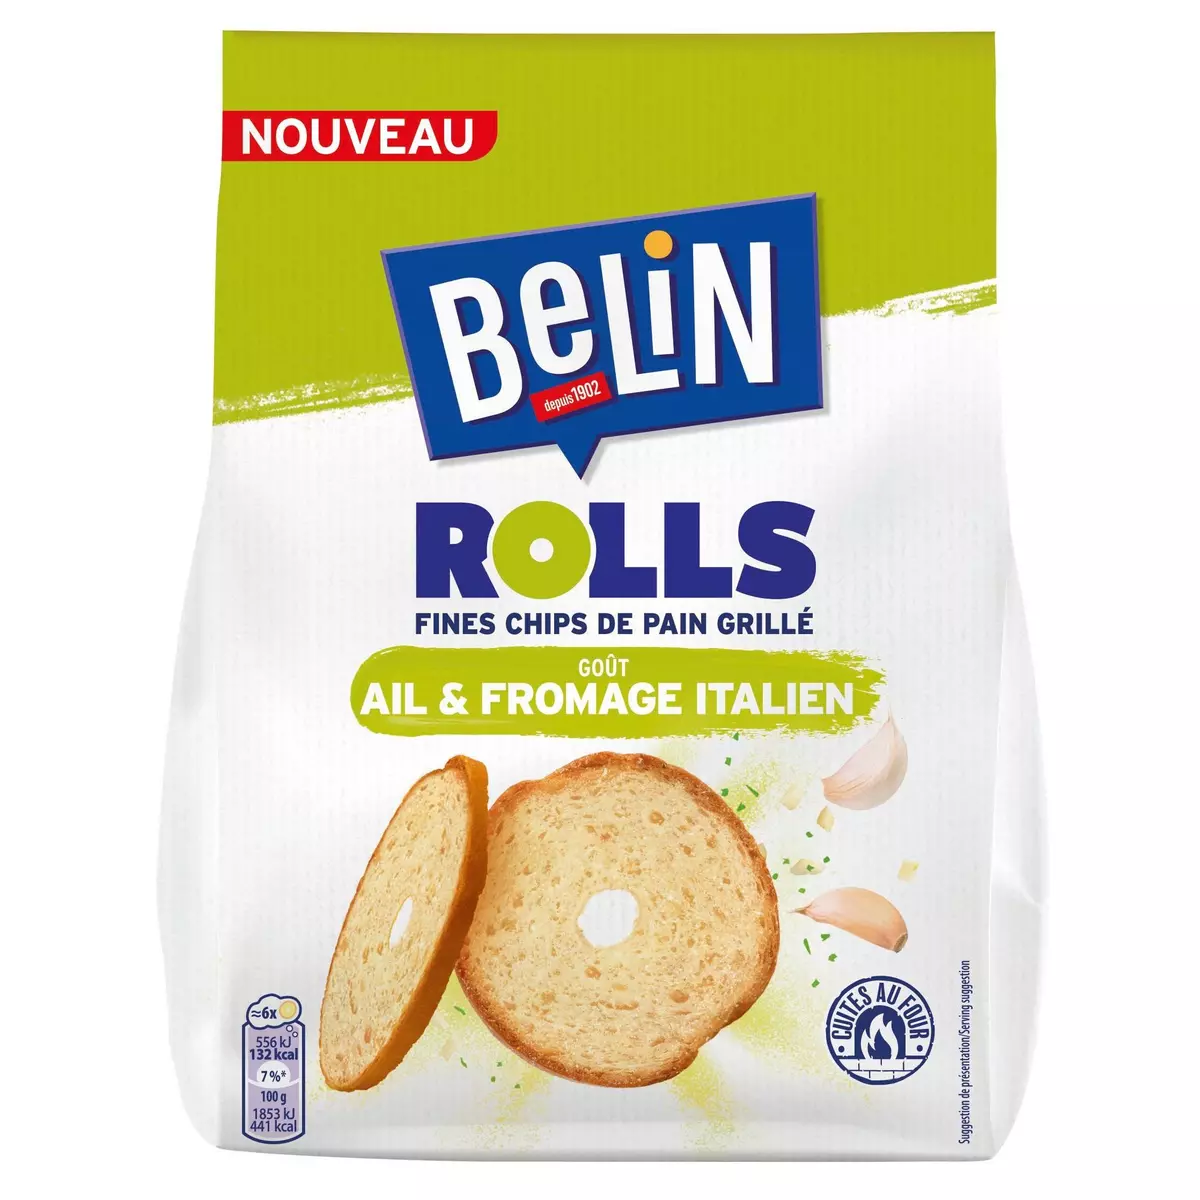 BELIN Fines chips de pain grillé Rolls goût ail et fromage italien 150g